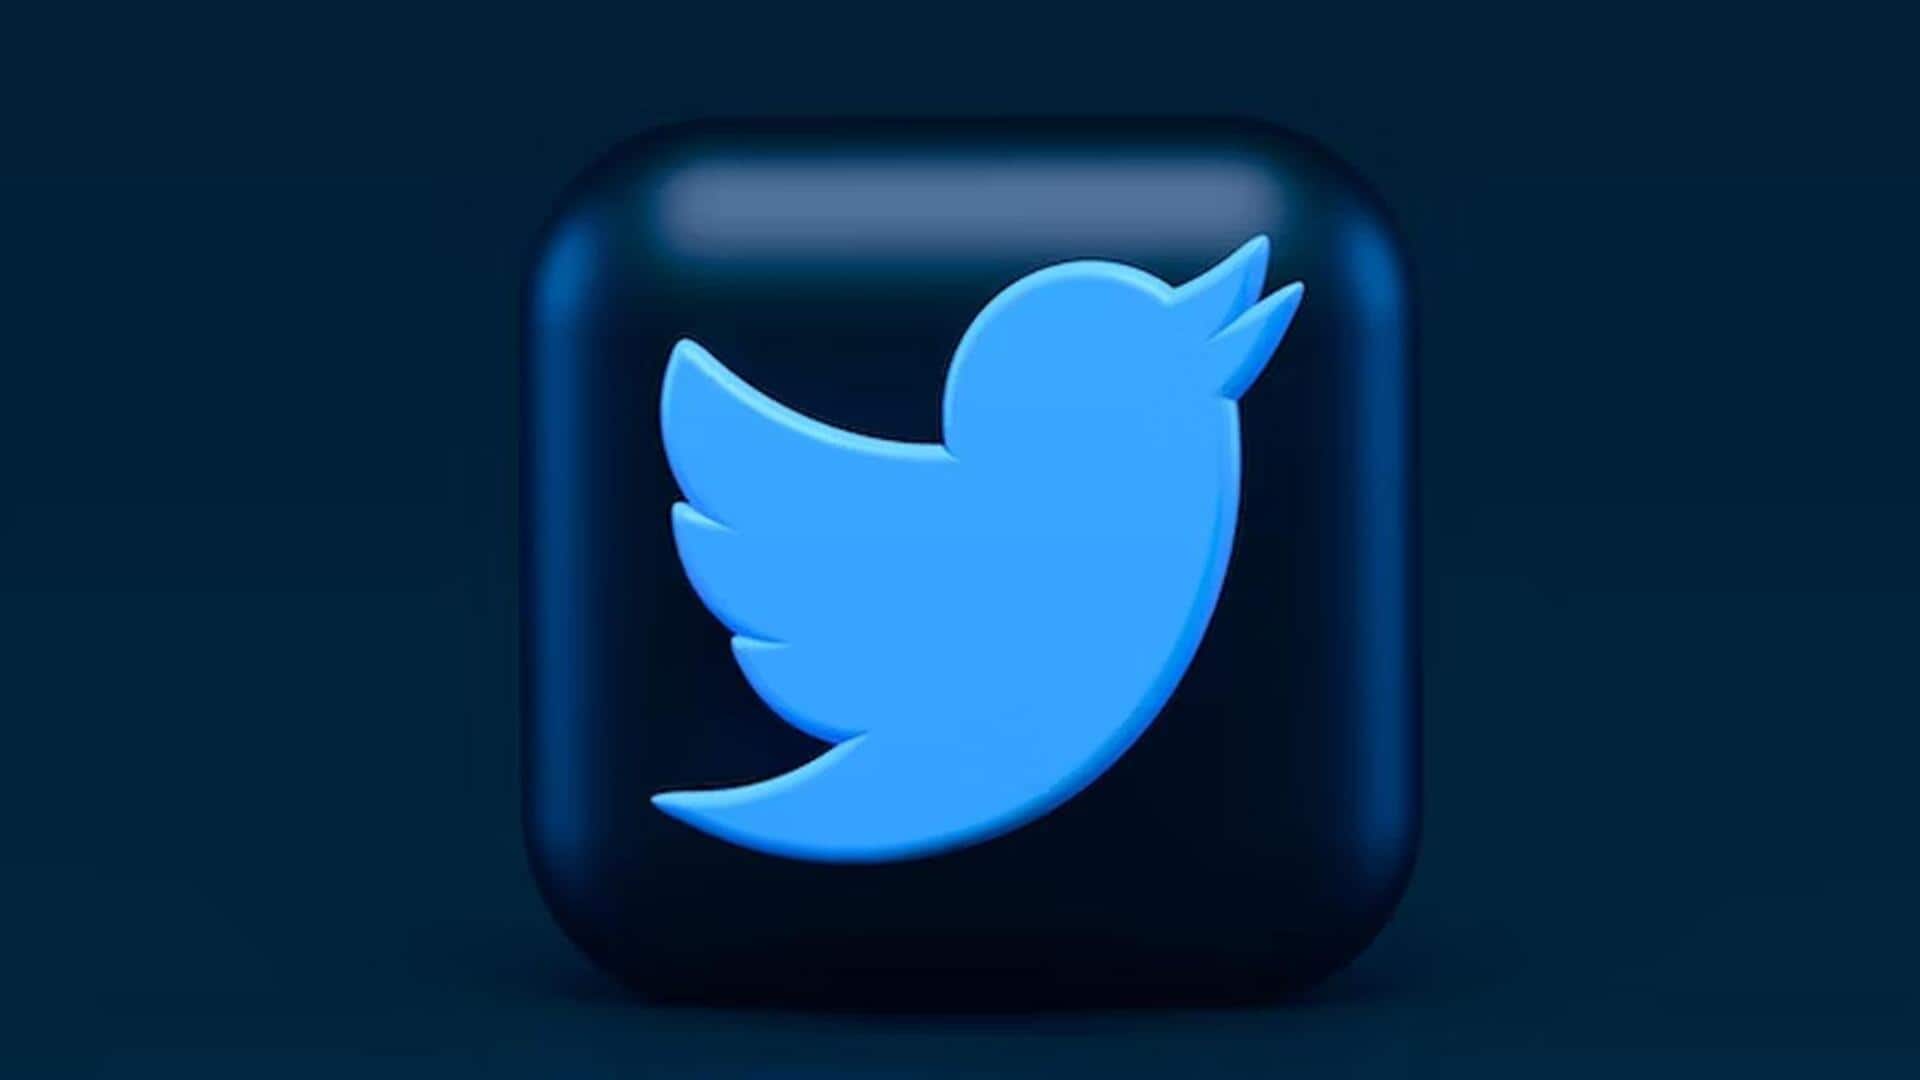 ट्विटर ने ब्लू सब्सक्राइबर्स के लिए बढ़ाई कैरेक्टर लिमिट, अब 10,000 कैरेक्टर में कर सकेंगे ट्वीट